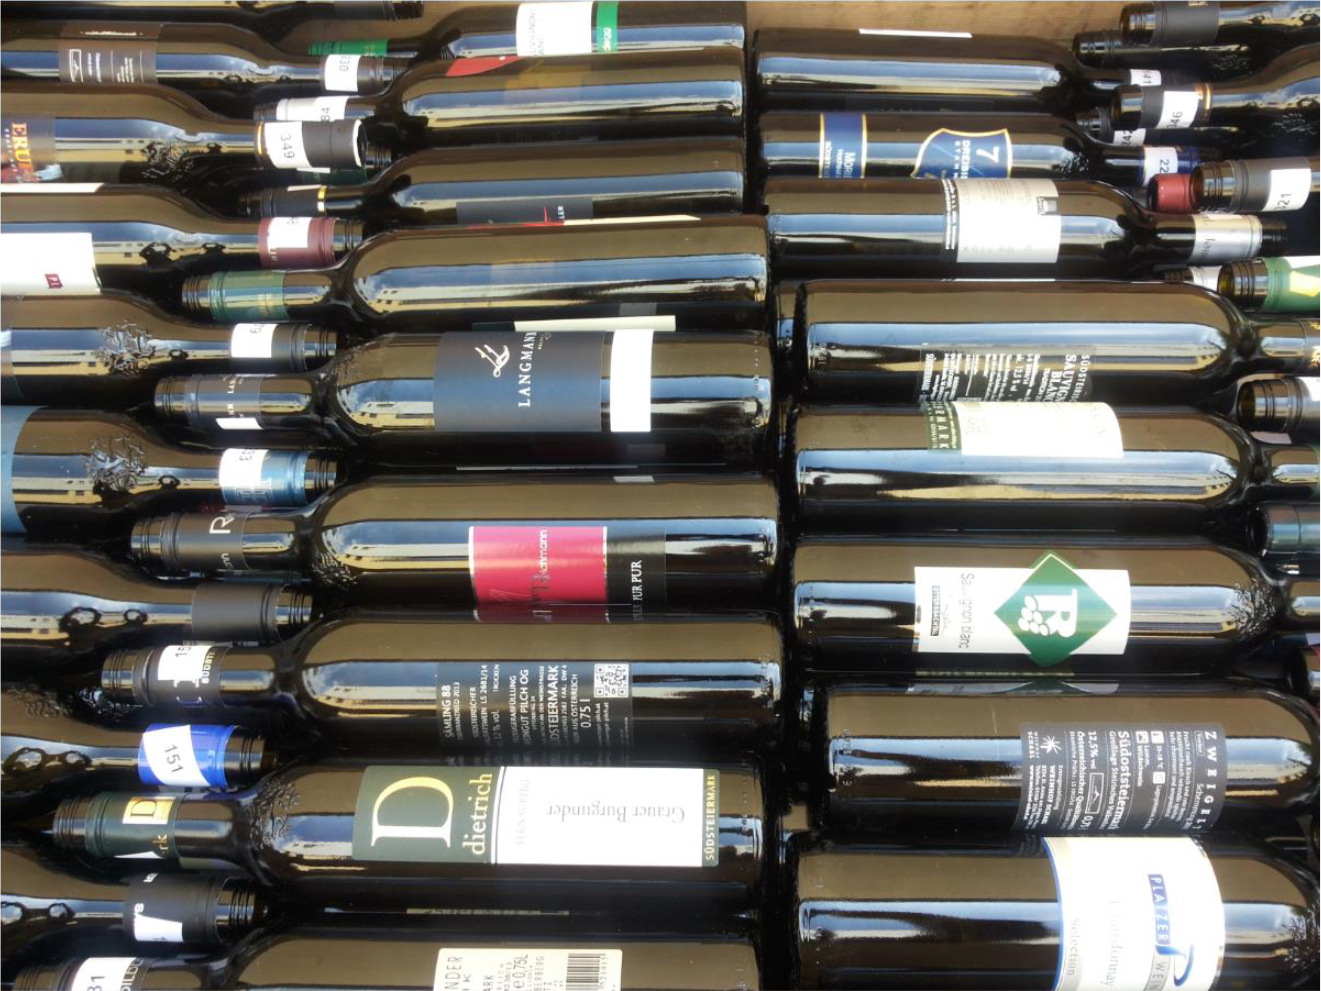 Reuse system for Styrian wine bottles